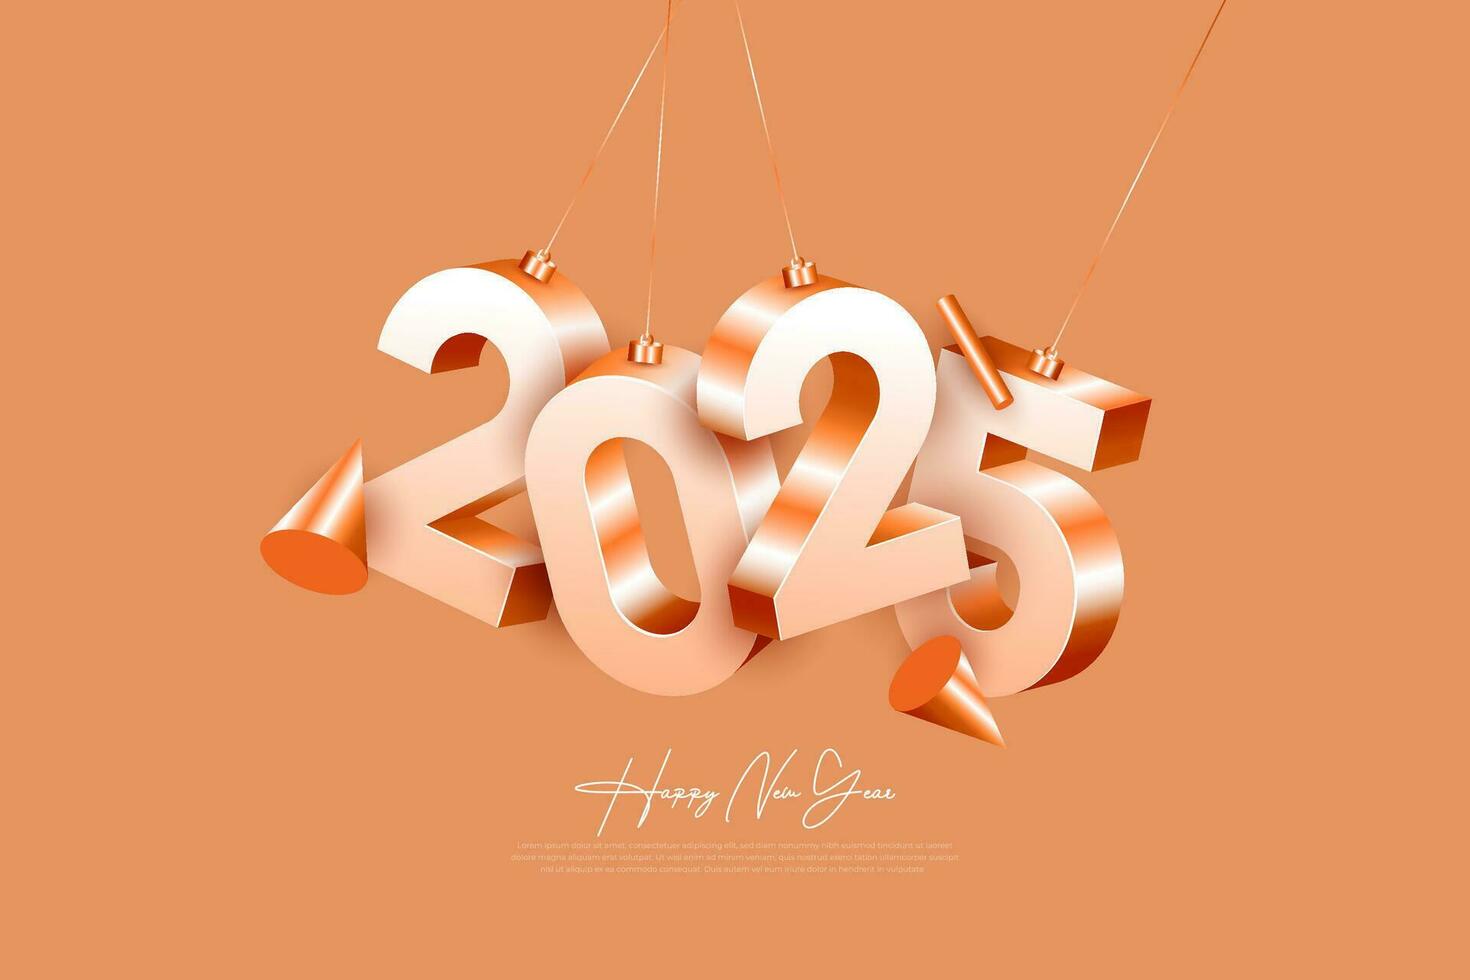 contento nuevo año 2025 diseño modelo. 2025 nuevo año celebracion concepto para saludo tarjeta, bandera y enviar modelo vector